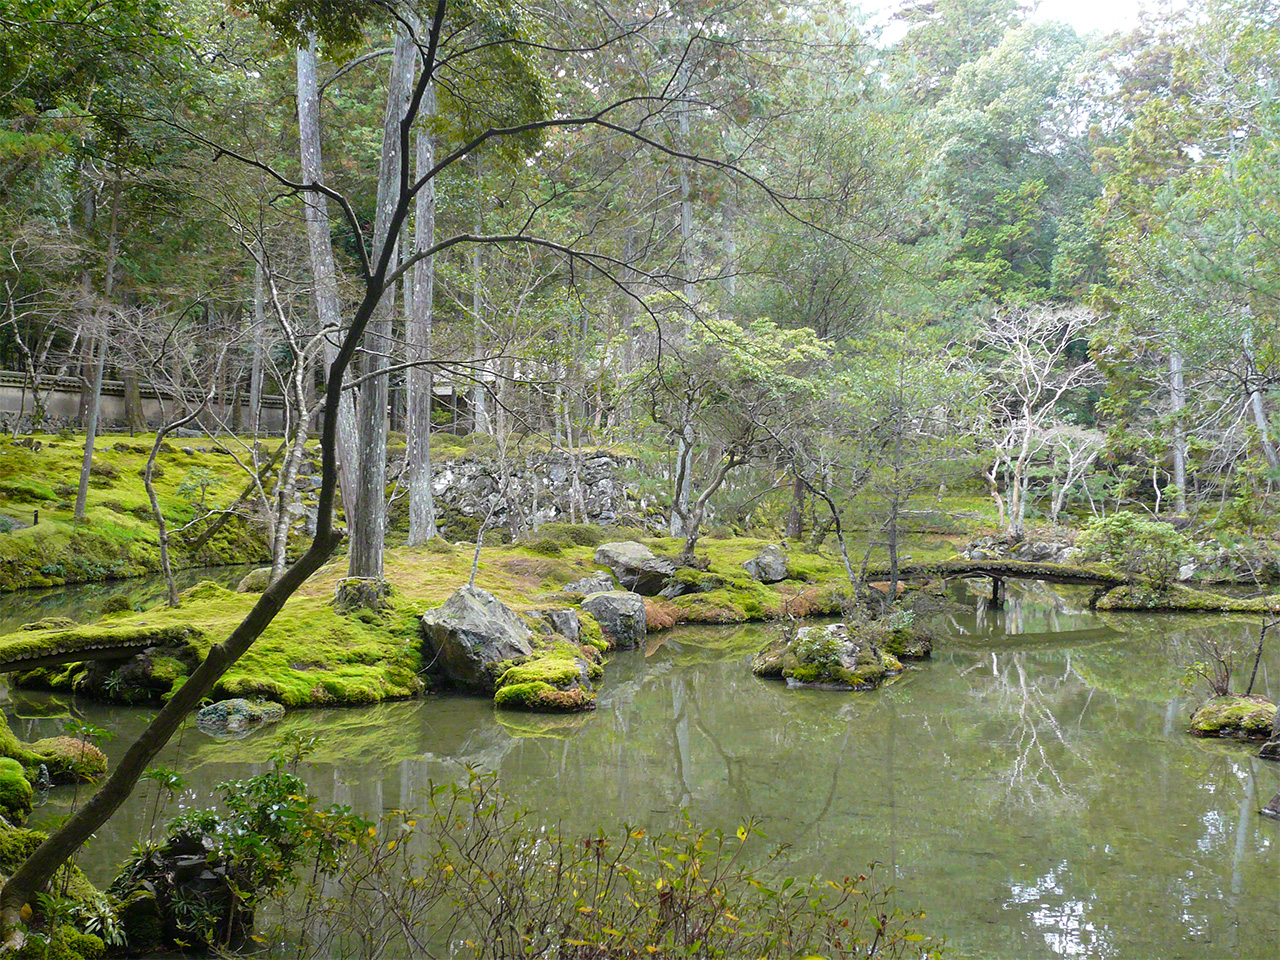 Jardín del templo budista Saihōji de Kioto, también conocido como “Templo del Musgo”. Este jardín impresionó profundamente a Takemitsu, que encontraba en este tipo de espacio fuentes de inspiración para sus composiciones.